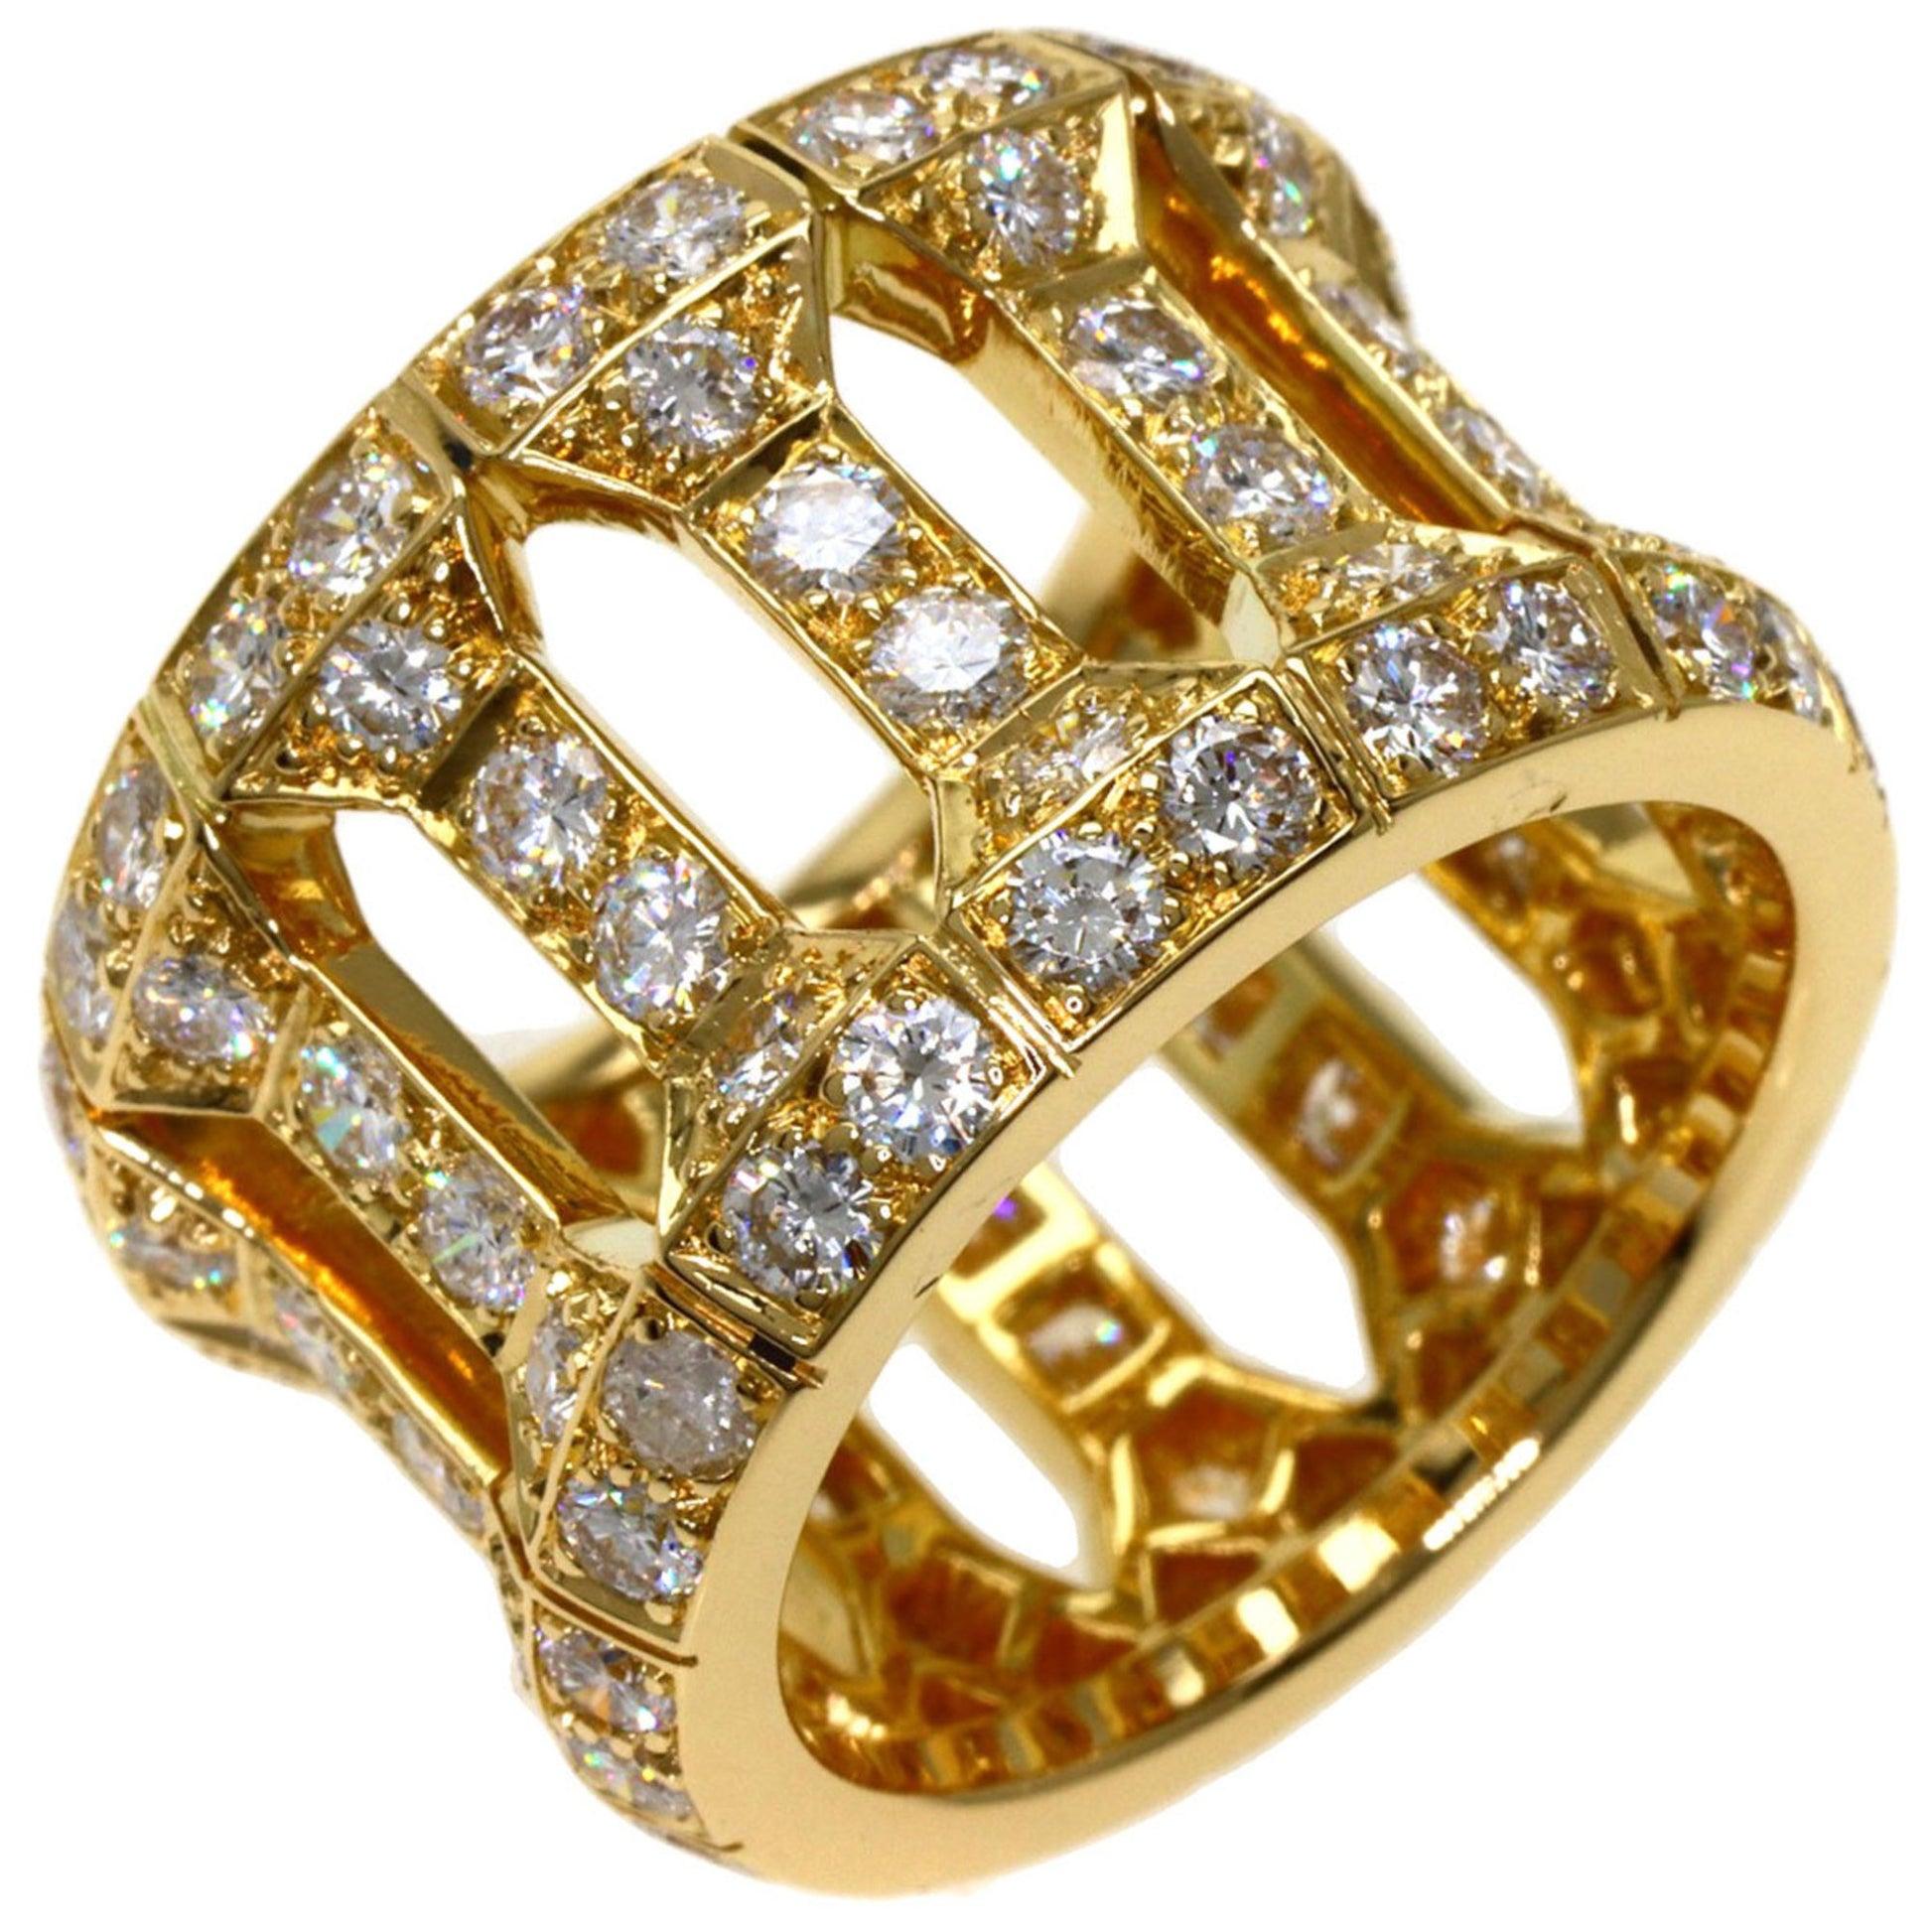 Cartier Antalia Diamantring aus 18 Karat Gelbgold mit Diamanten

Zusätzliche Informationen:
Marke: Cartier
Geschlecht: Frauen
Edelstein: Diamant
MATERIAL: Gelbgold (18K)
Ringgröße (US): 6.5-7
Zustand: Gut
Details zum Zustand: Der Artikel ist